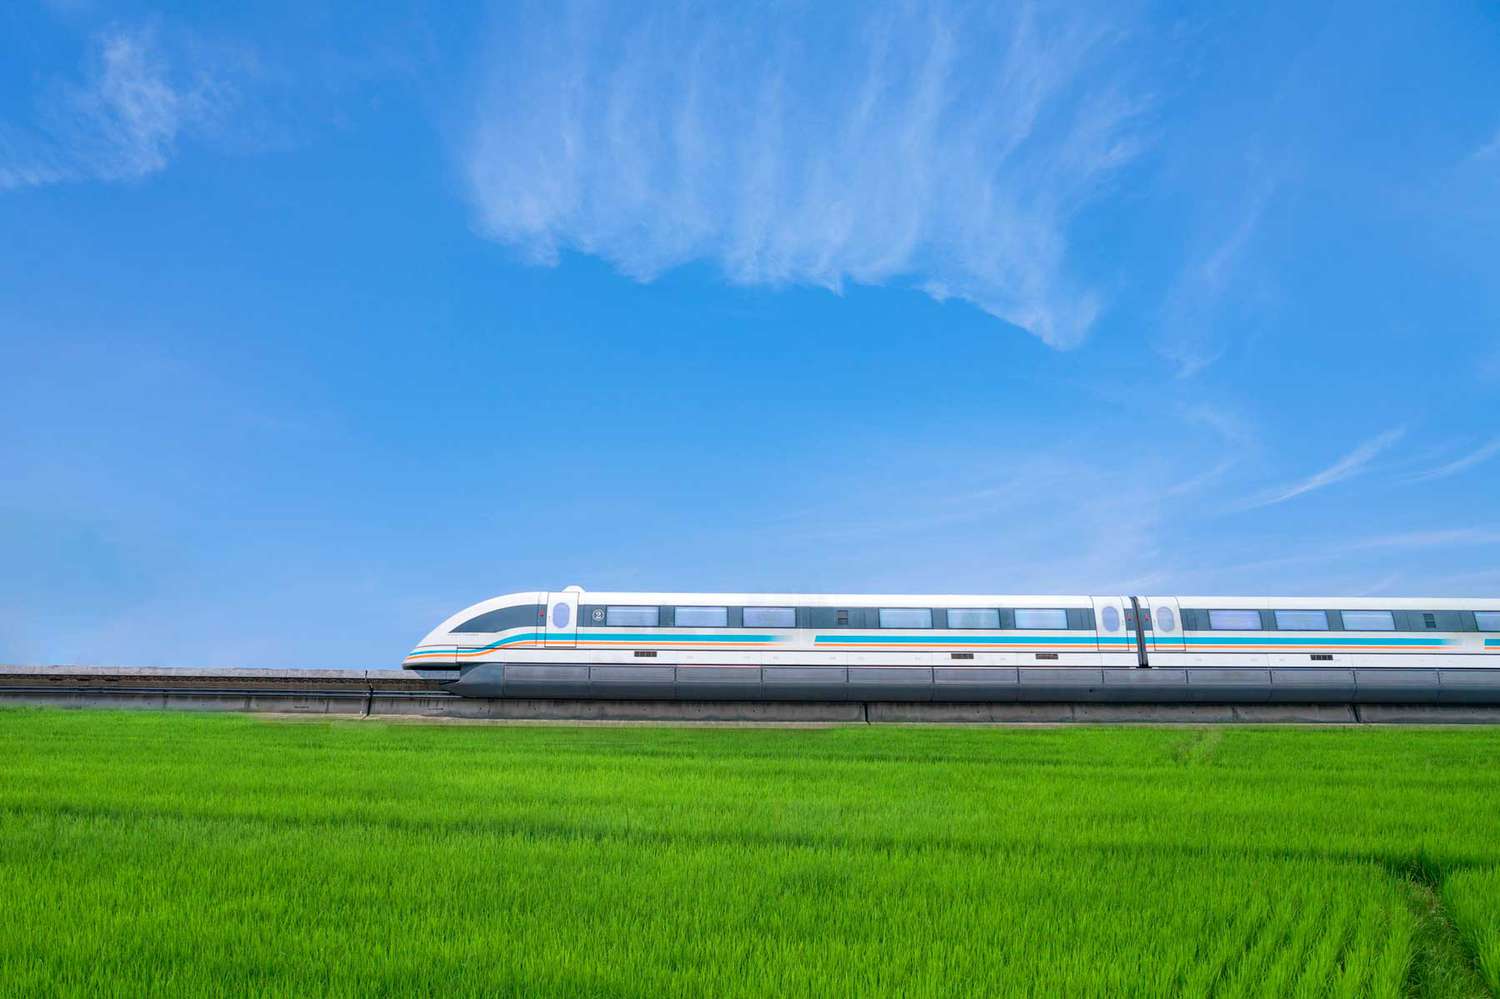 shanghai maglev train FASTRAINS0321 3a696f883c89426eb3385682c796f503